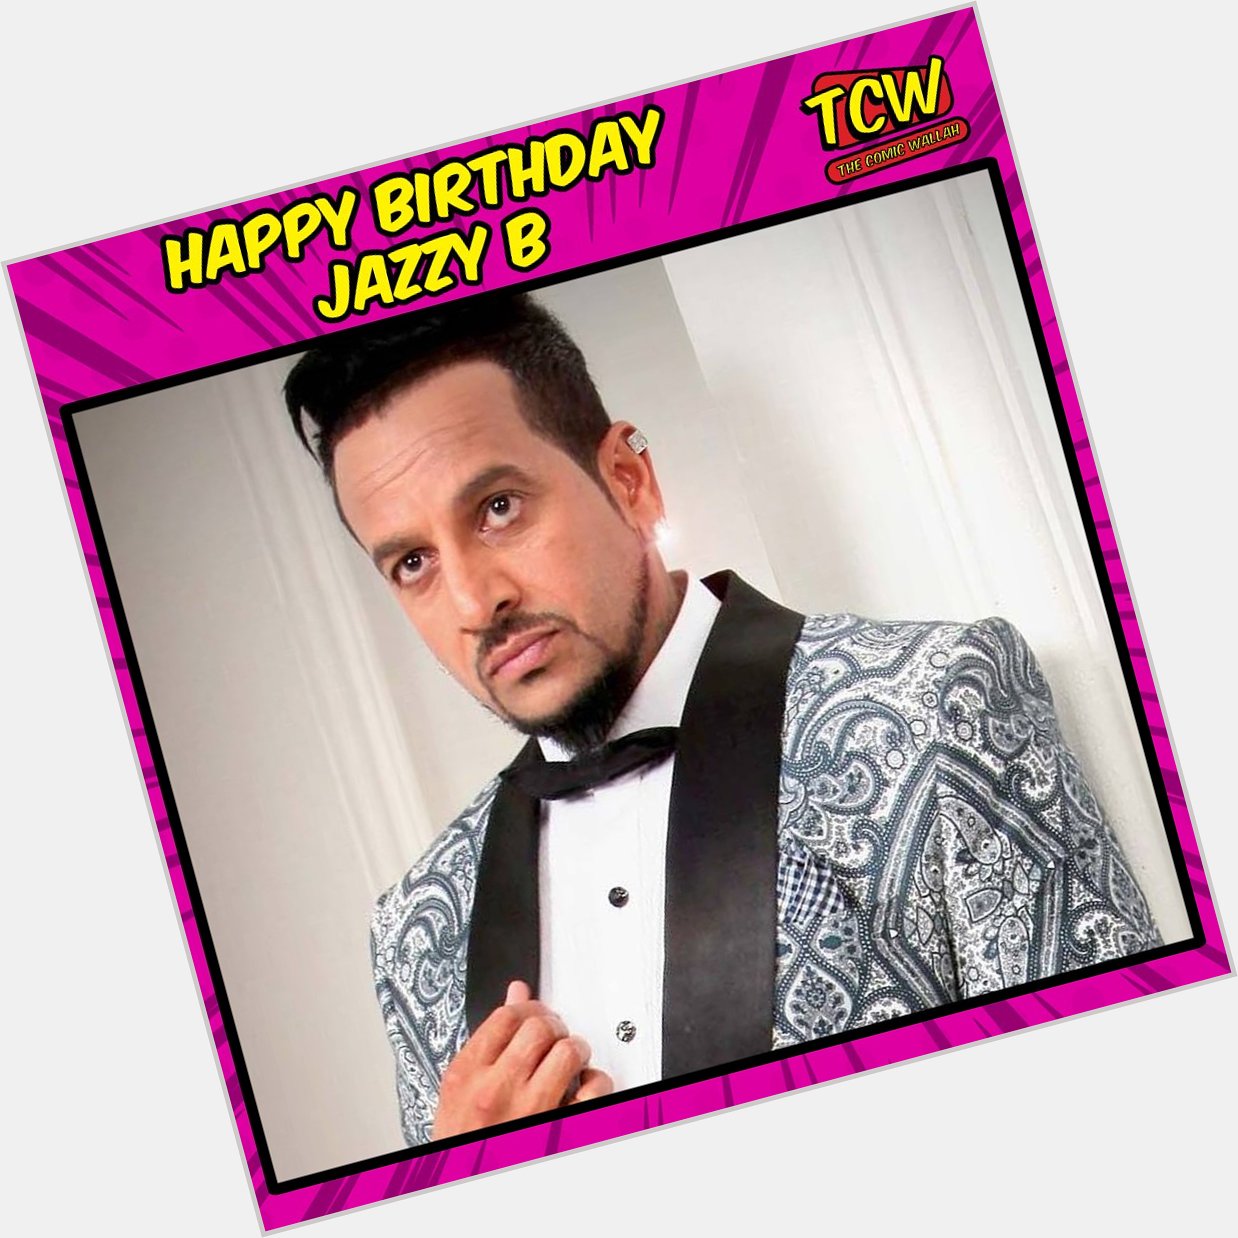 Wishing Happy birthday to Jazzy B. 